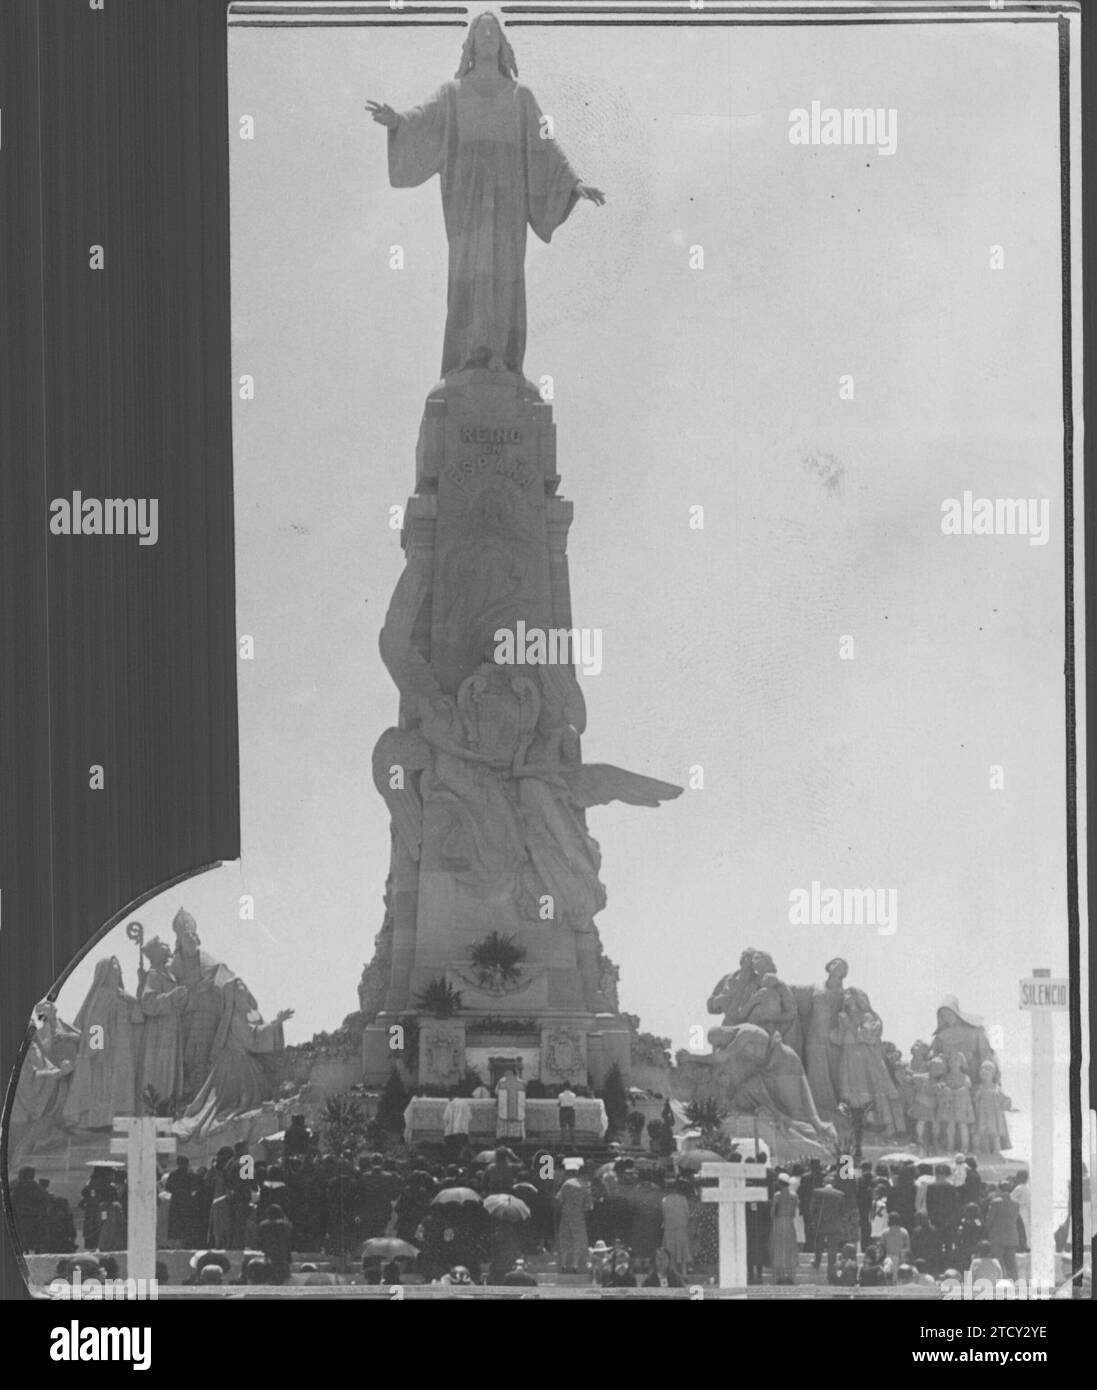 01/31/1930. Messe attestée par de nombreux fidèles au Monument au Sacré-cœur de Jésus. Crédit : Album / Archivo ABC Banque D'Images